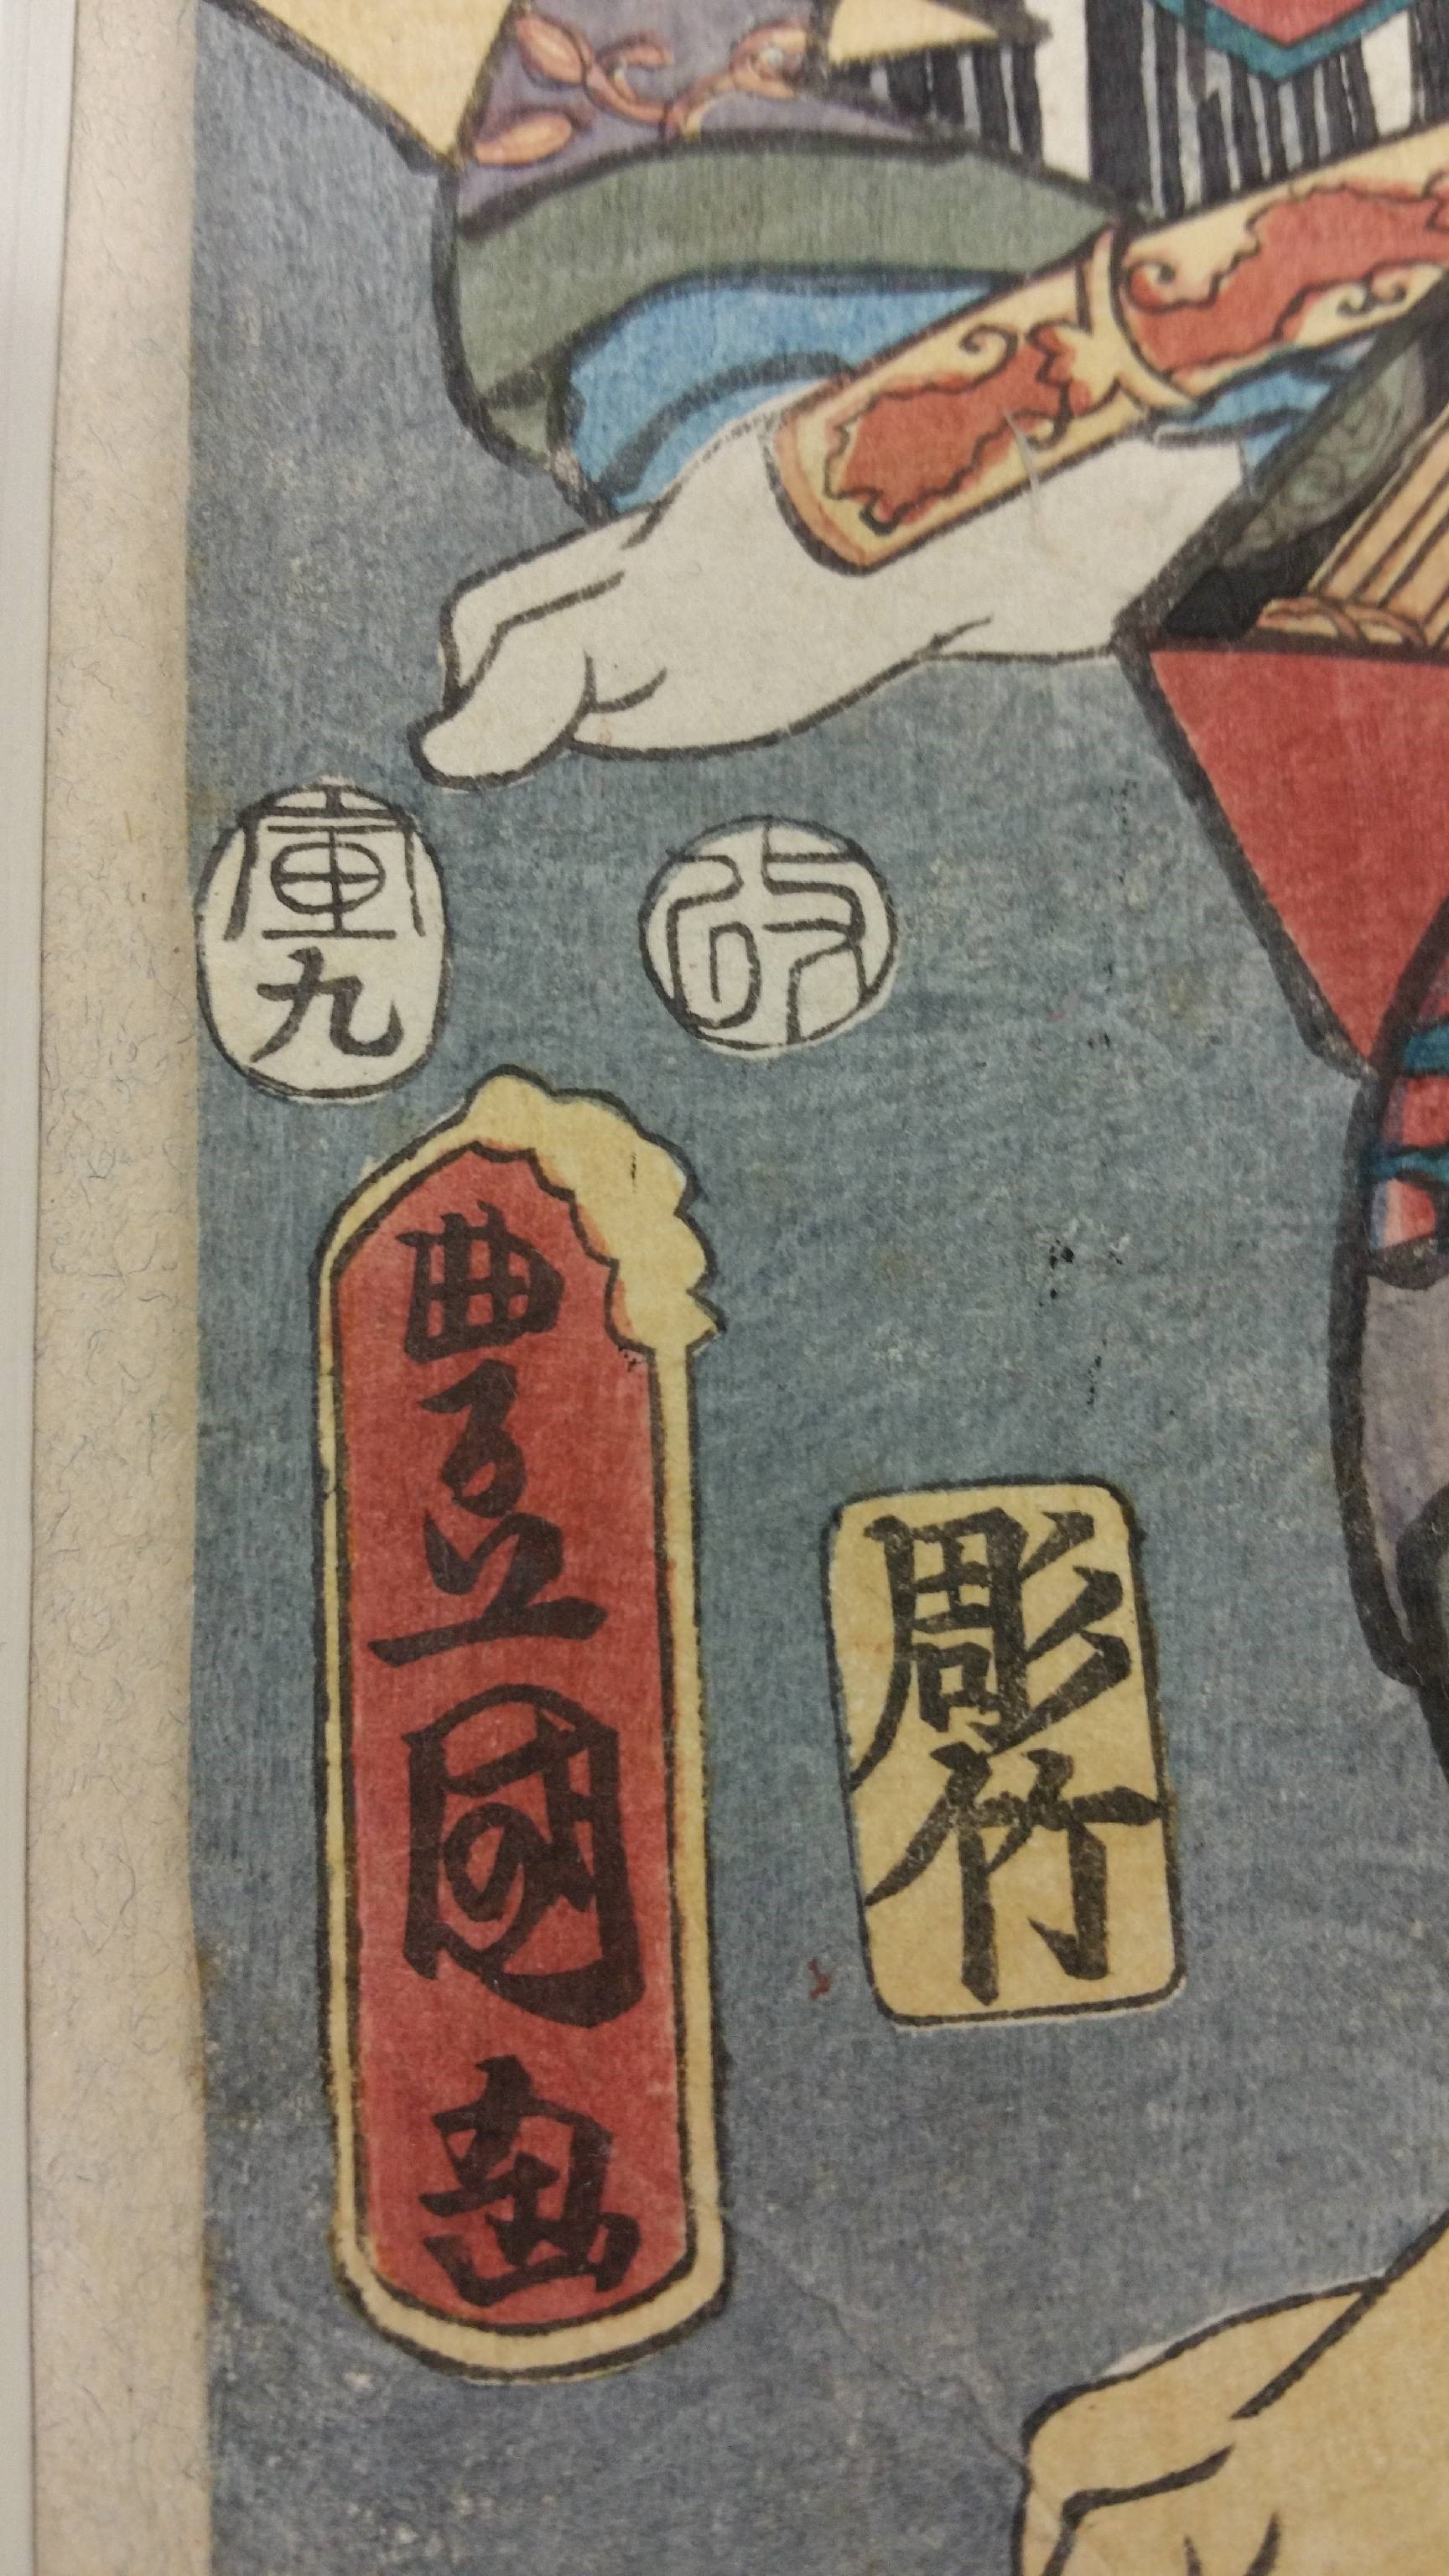 Detalle del grabado  Yuranosuke, Kumagai y Jiraiya de Utagawa Kunisada. Fecha en el círculo de la izquierda y aratame a la derecha